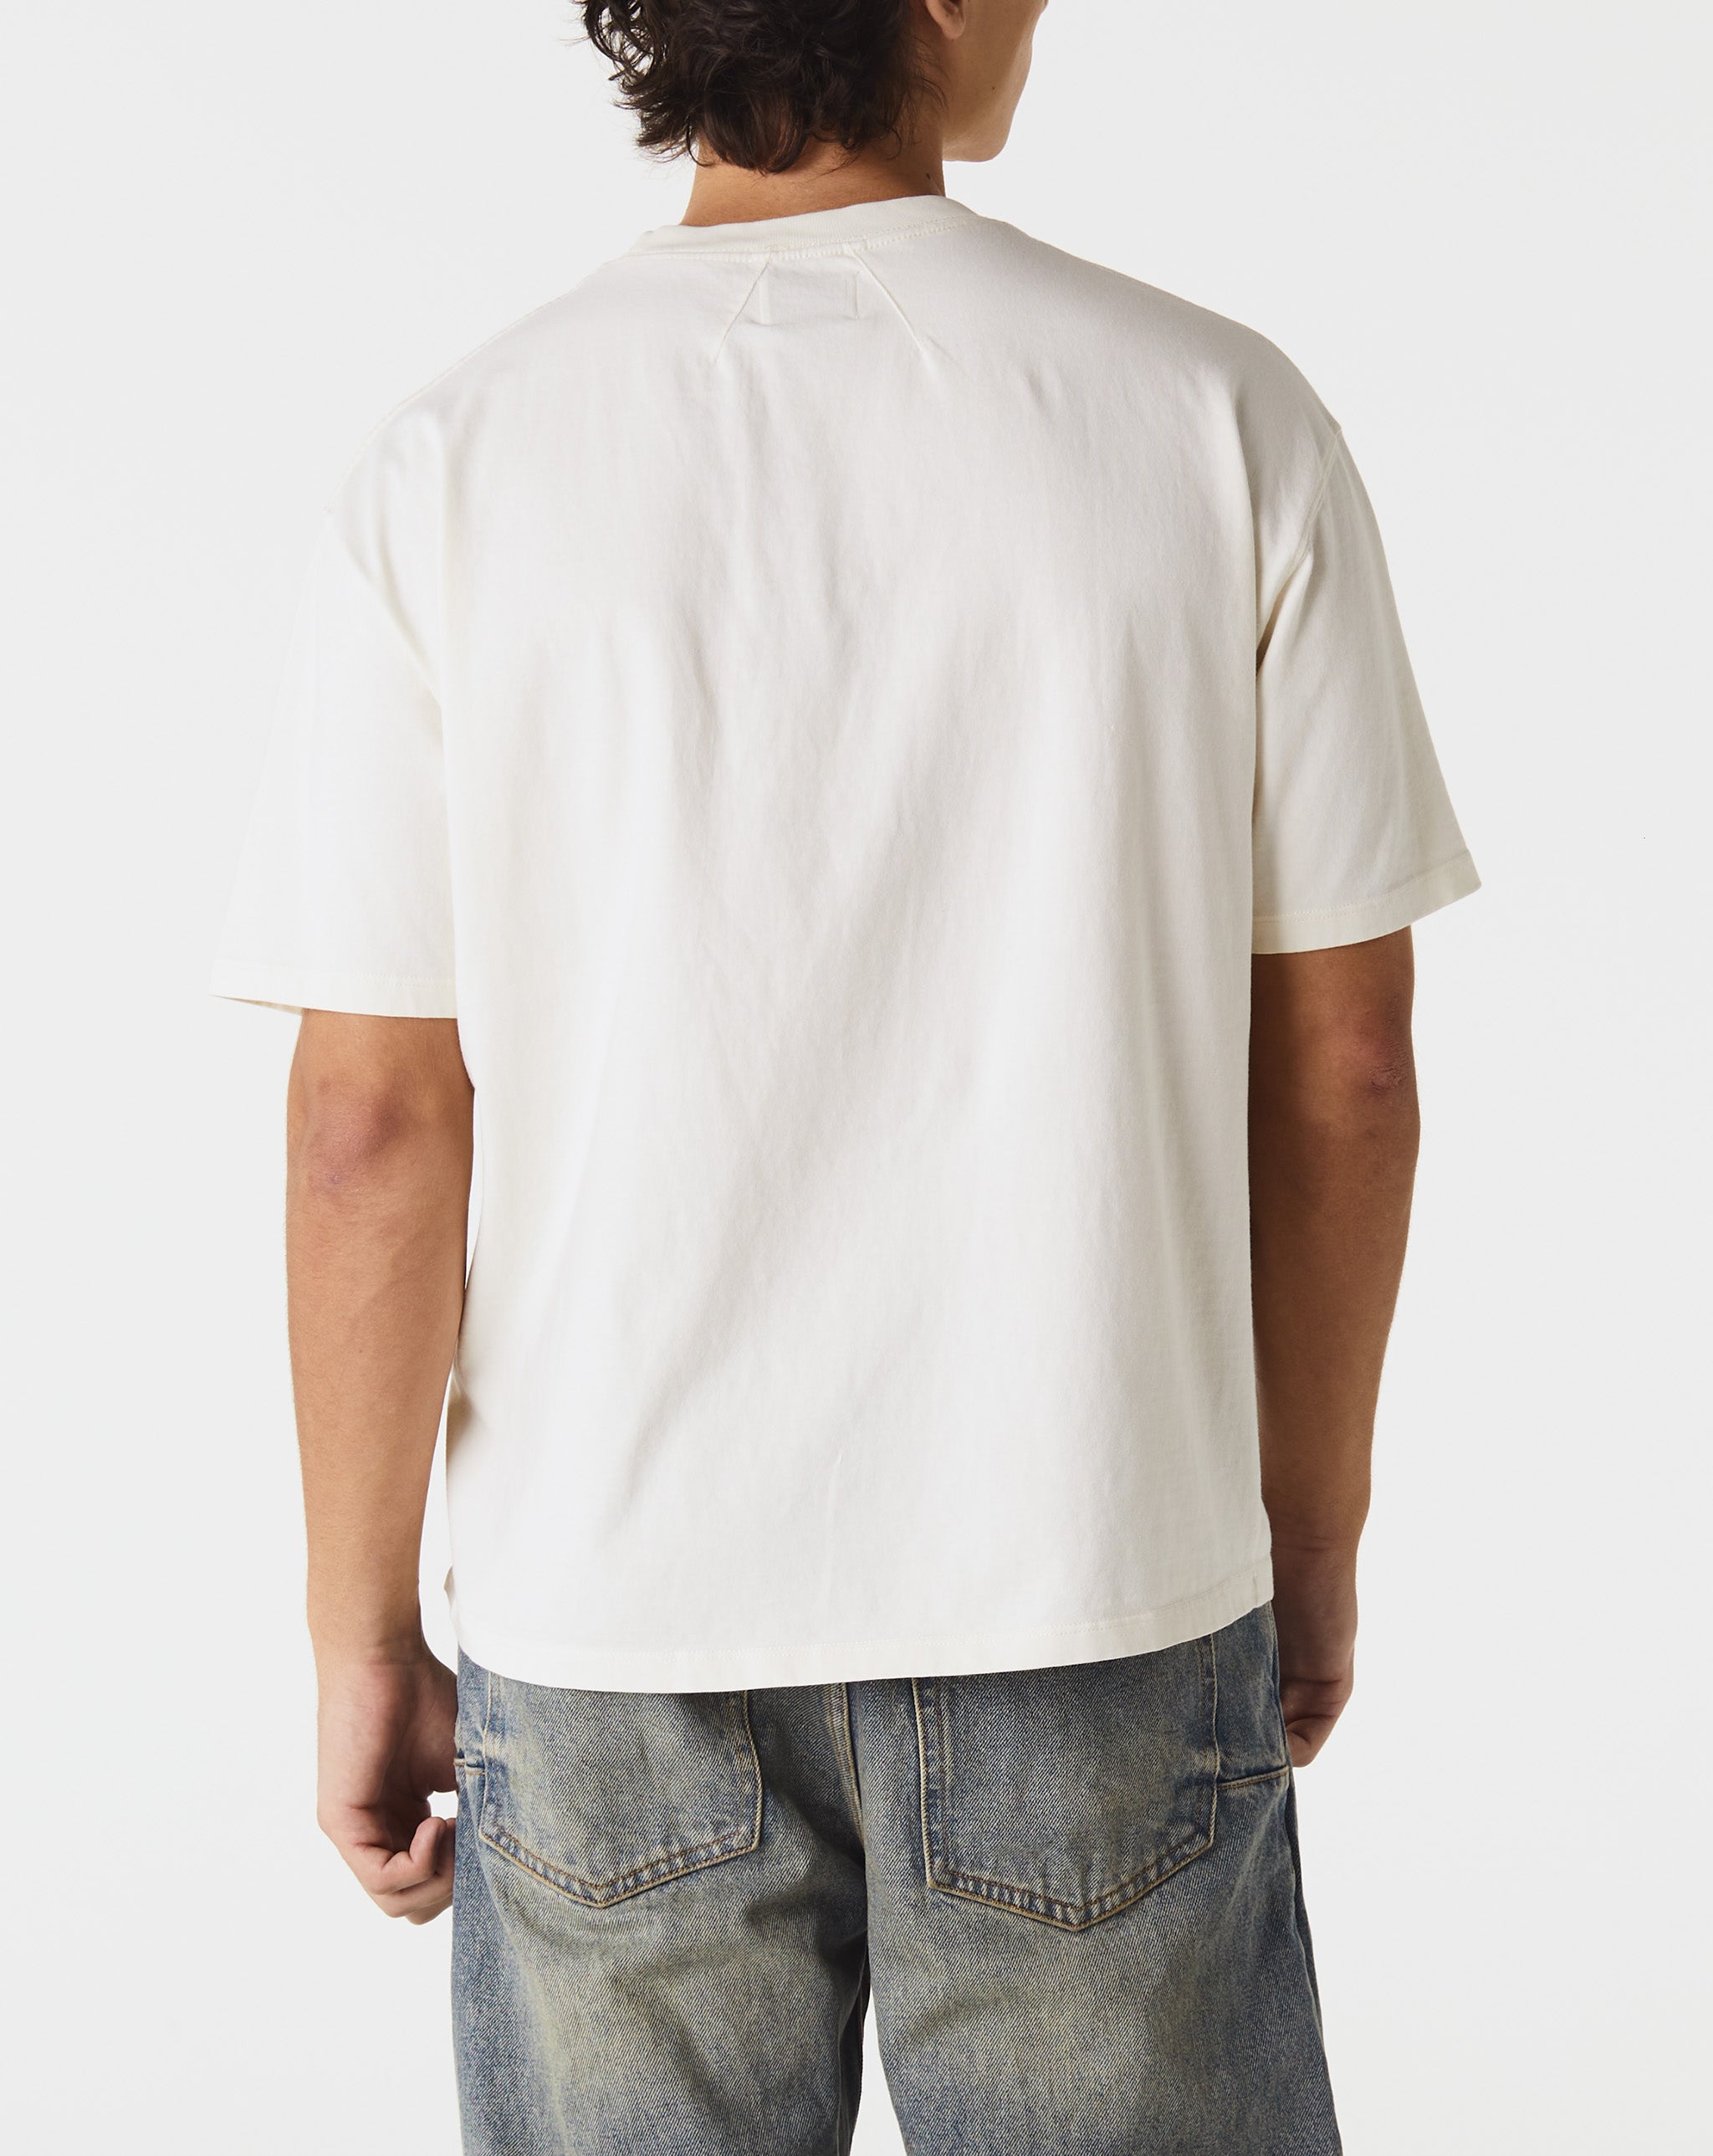 Rhude Shirts & Polos  - Cheap Urlfreeze Jordan outlet